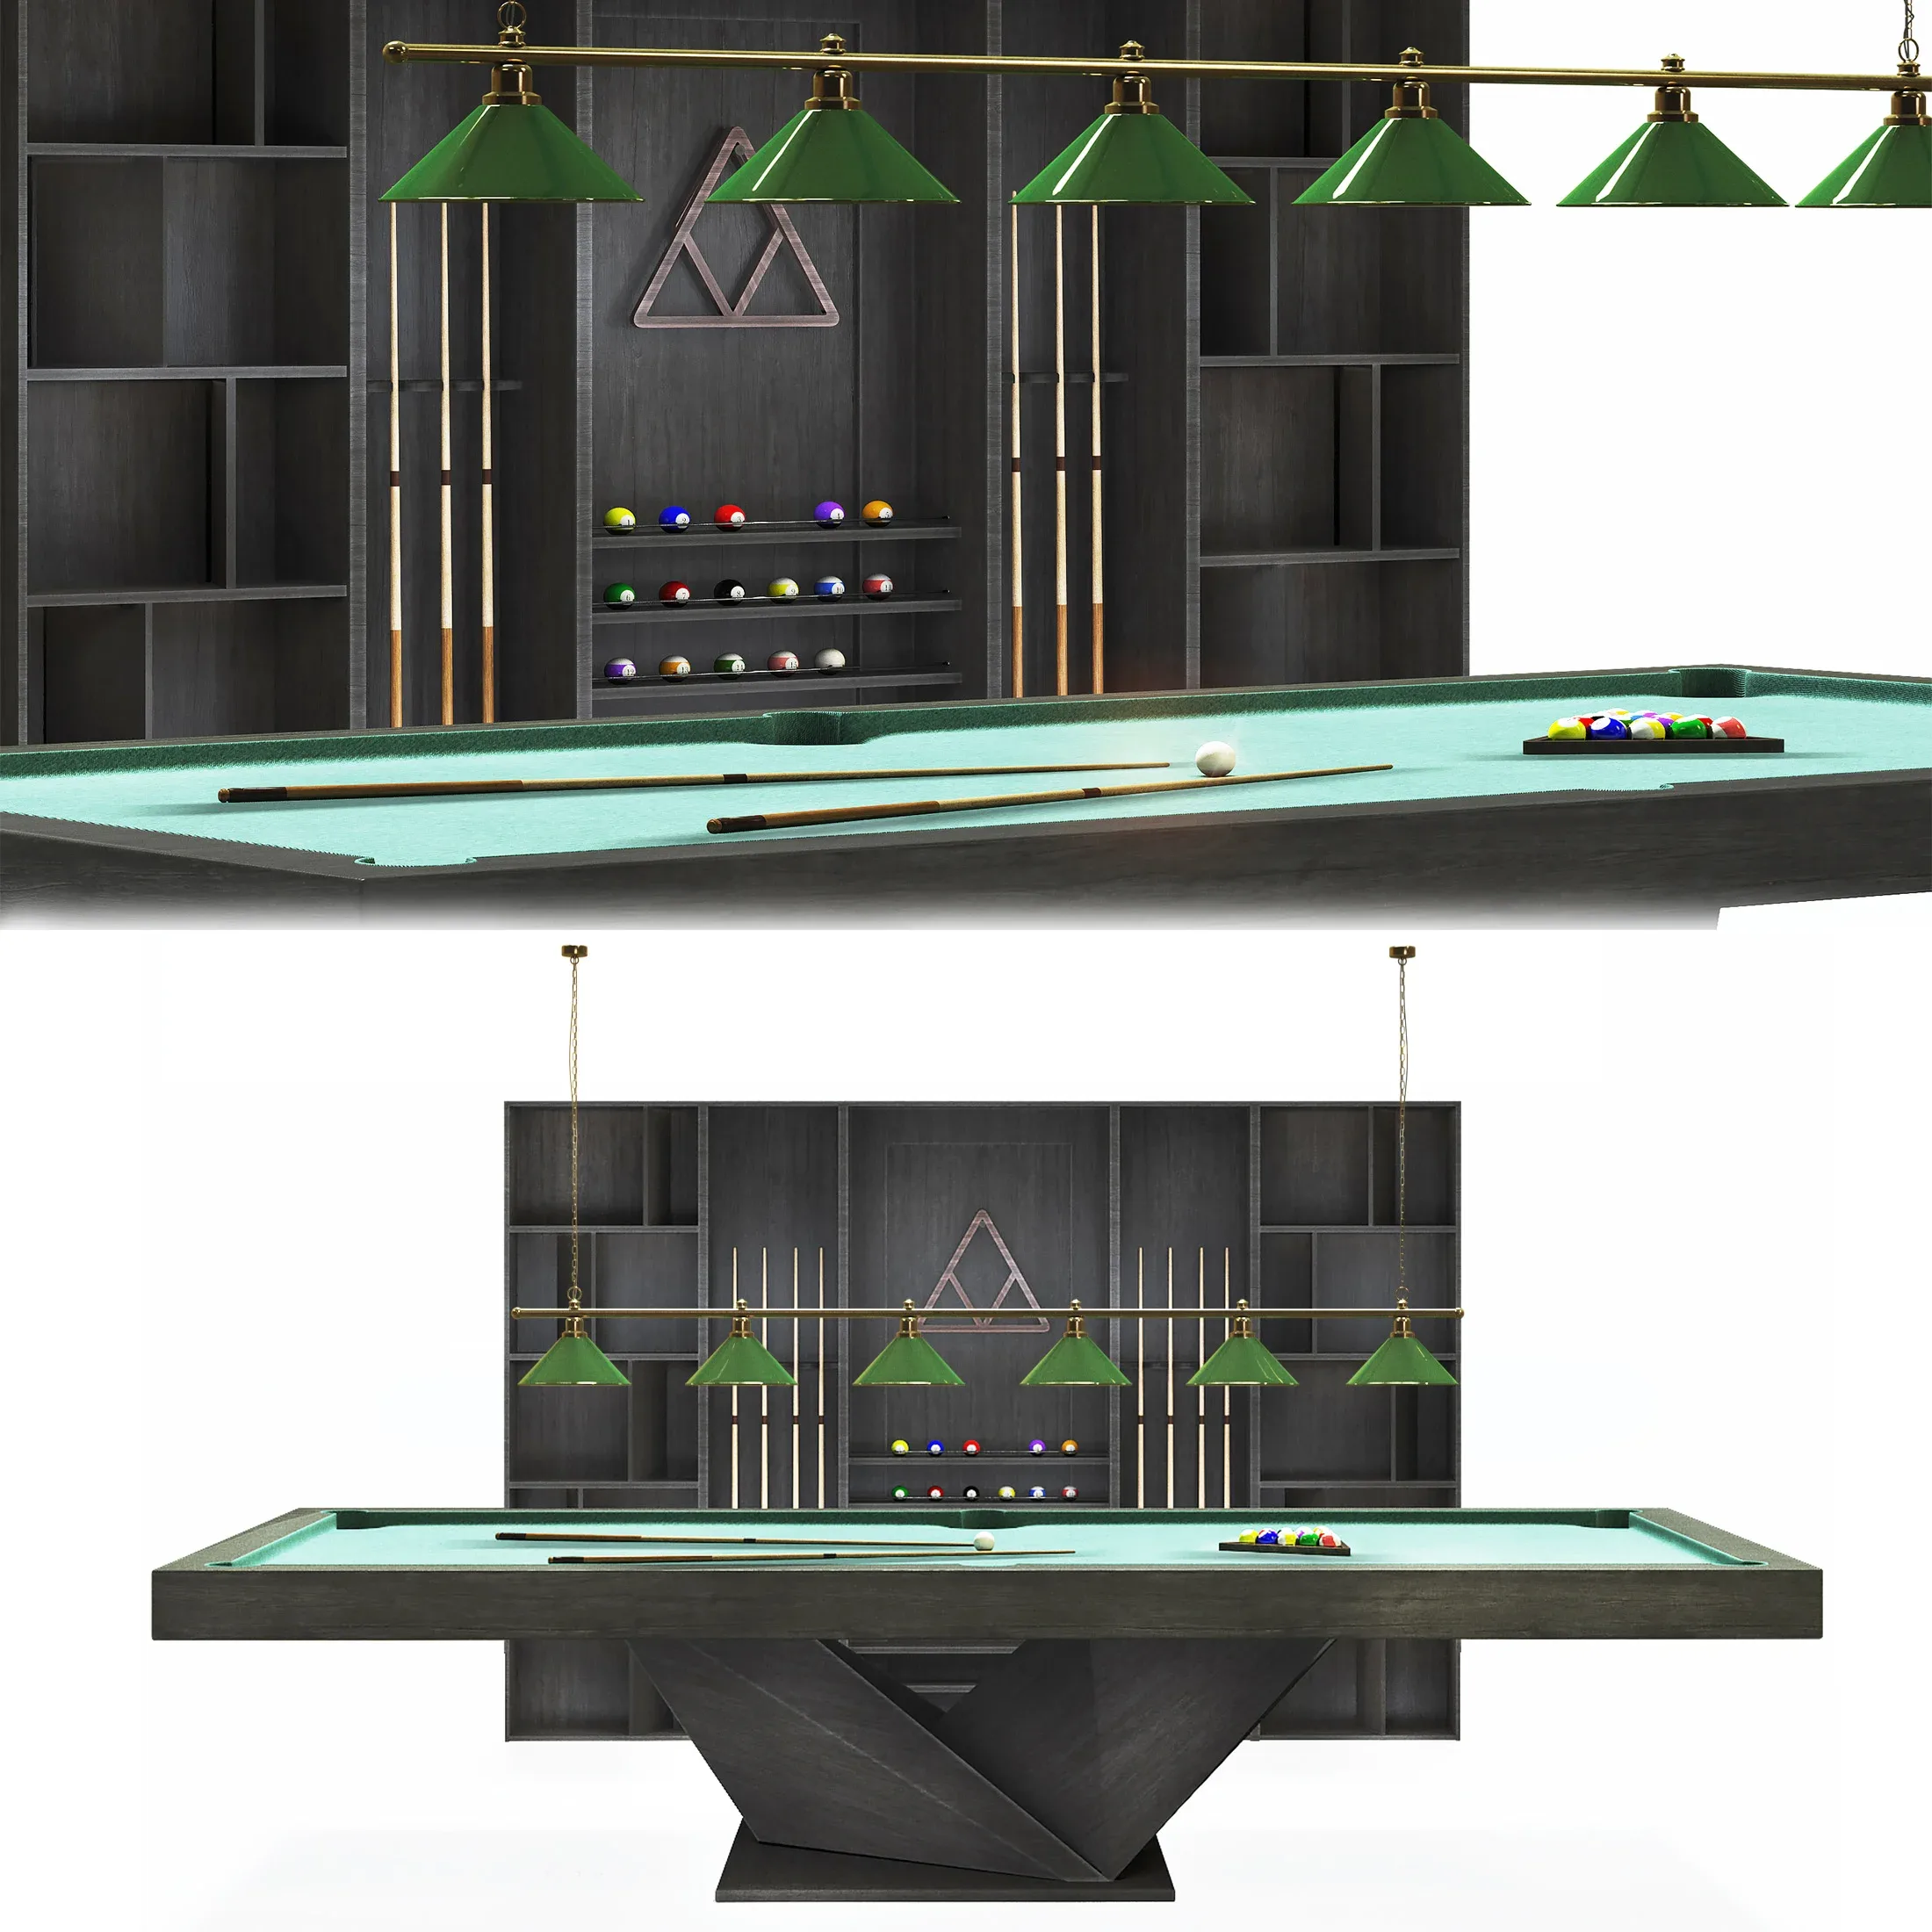 Billiard room set, pool table